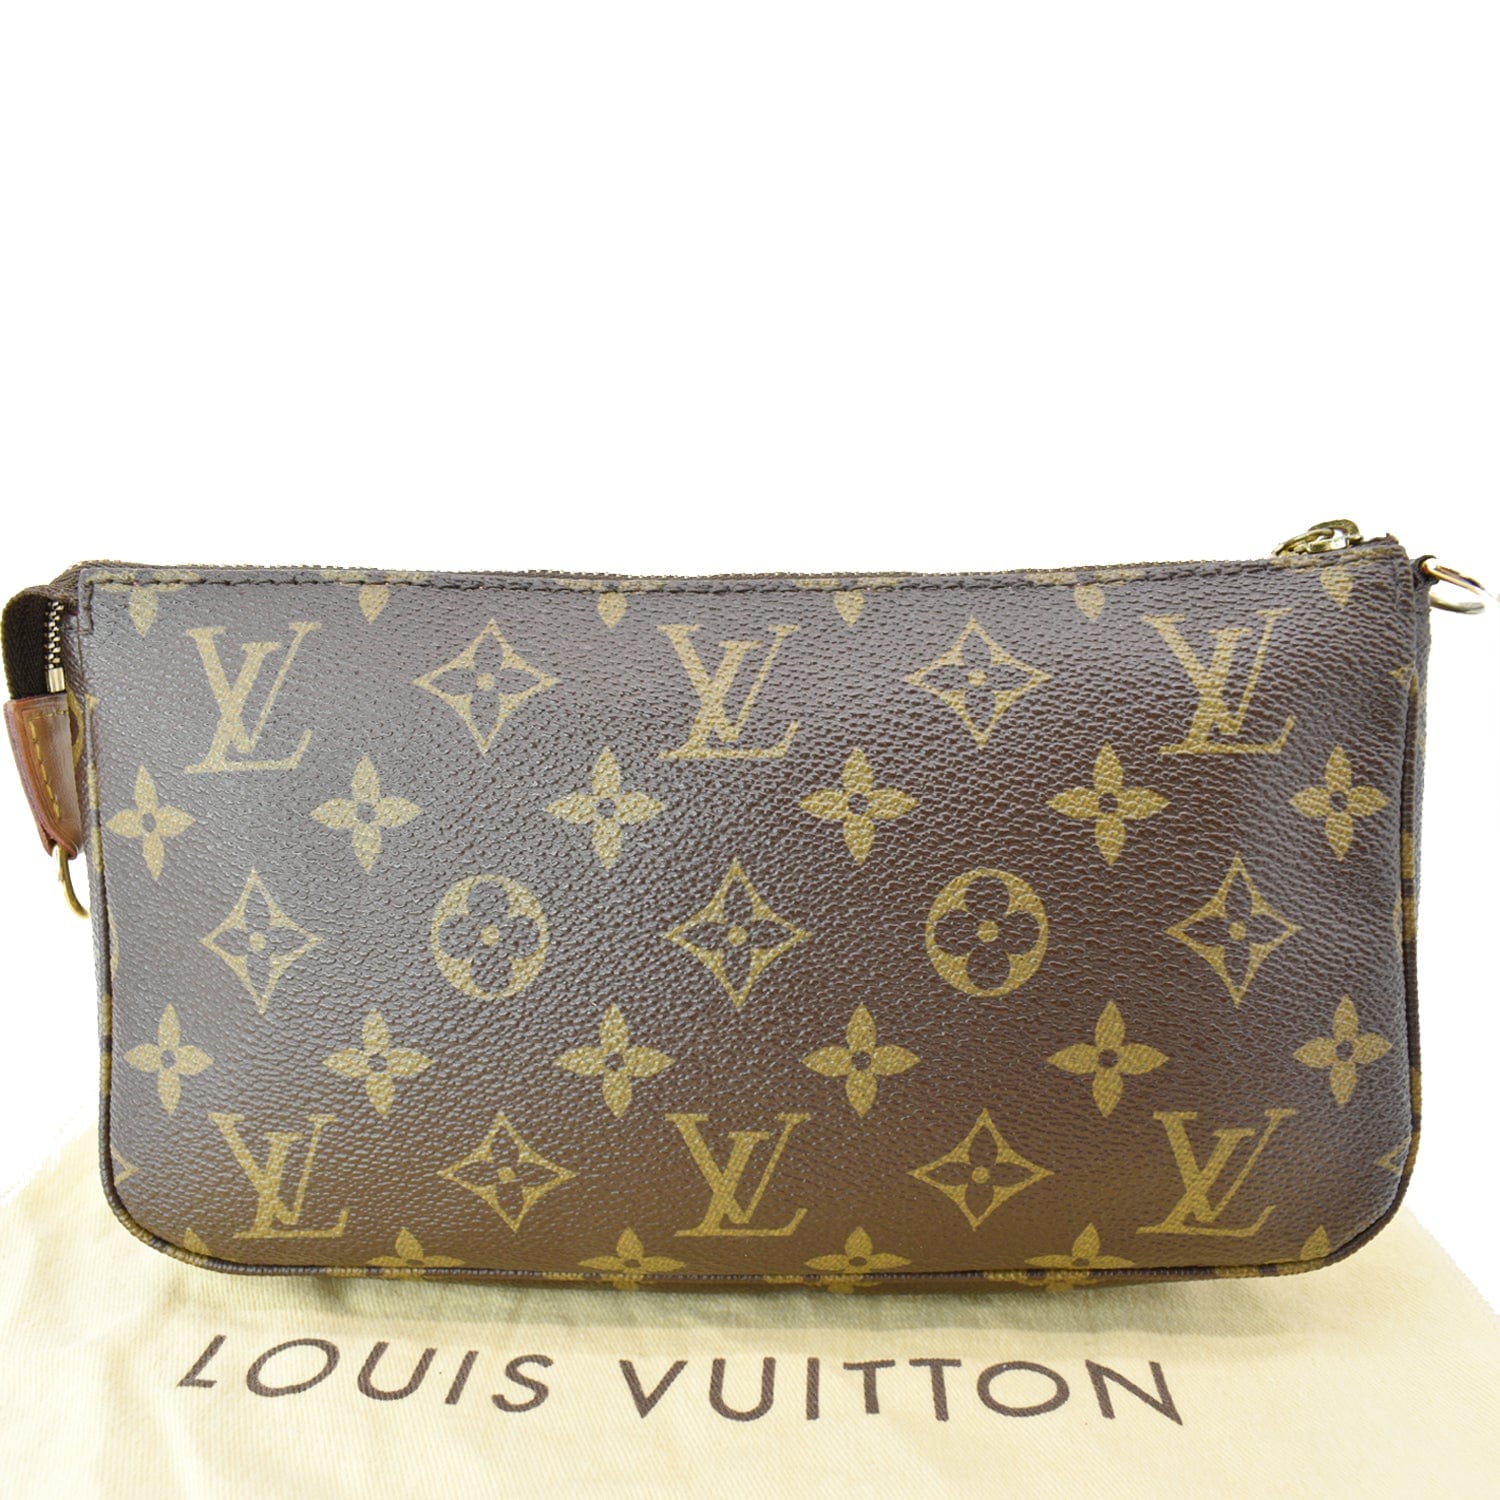 LOUIS VUITTON Pochette Accessoires Bag M40712